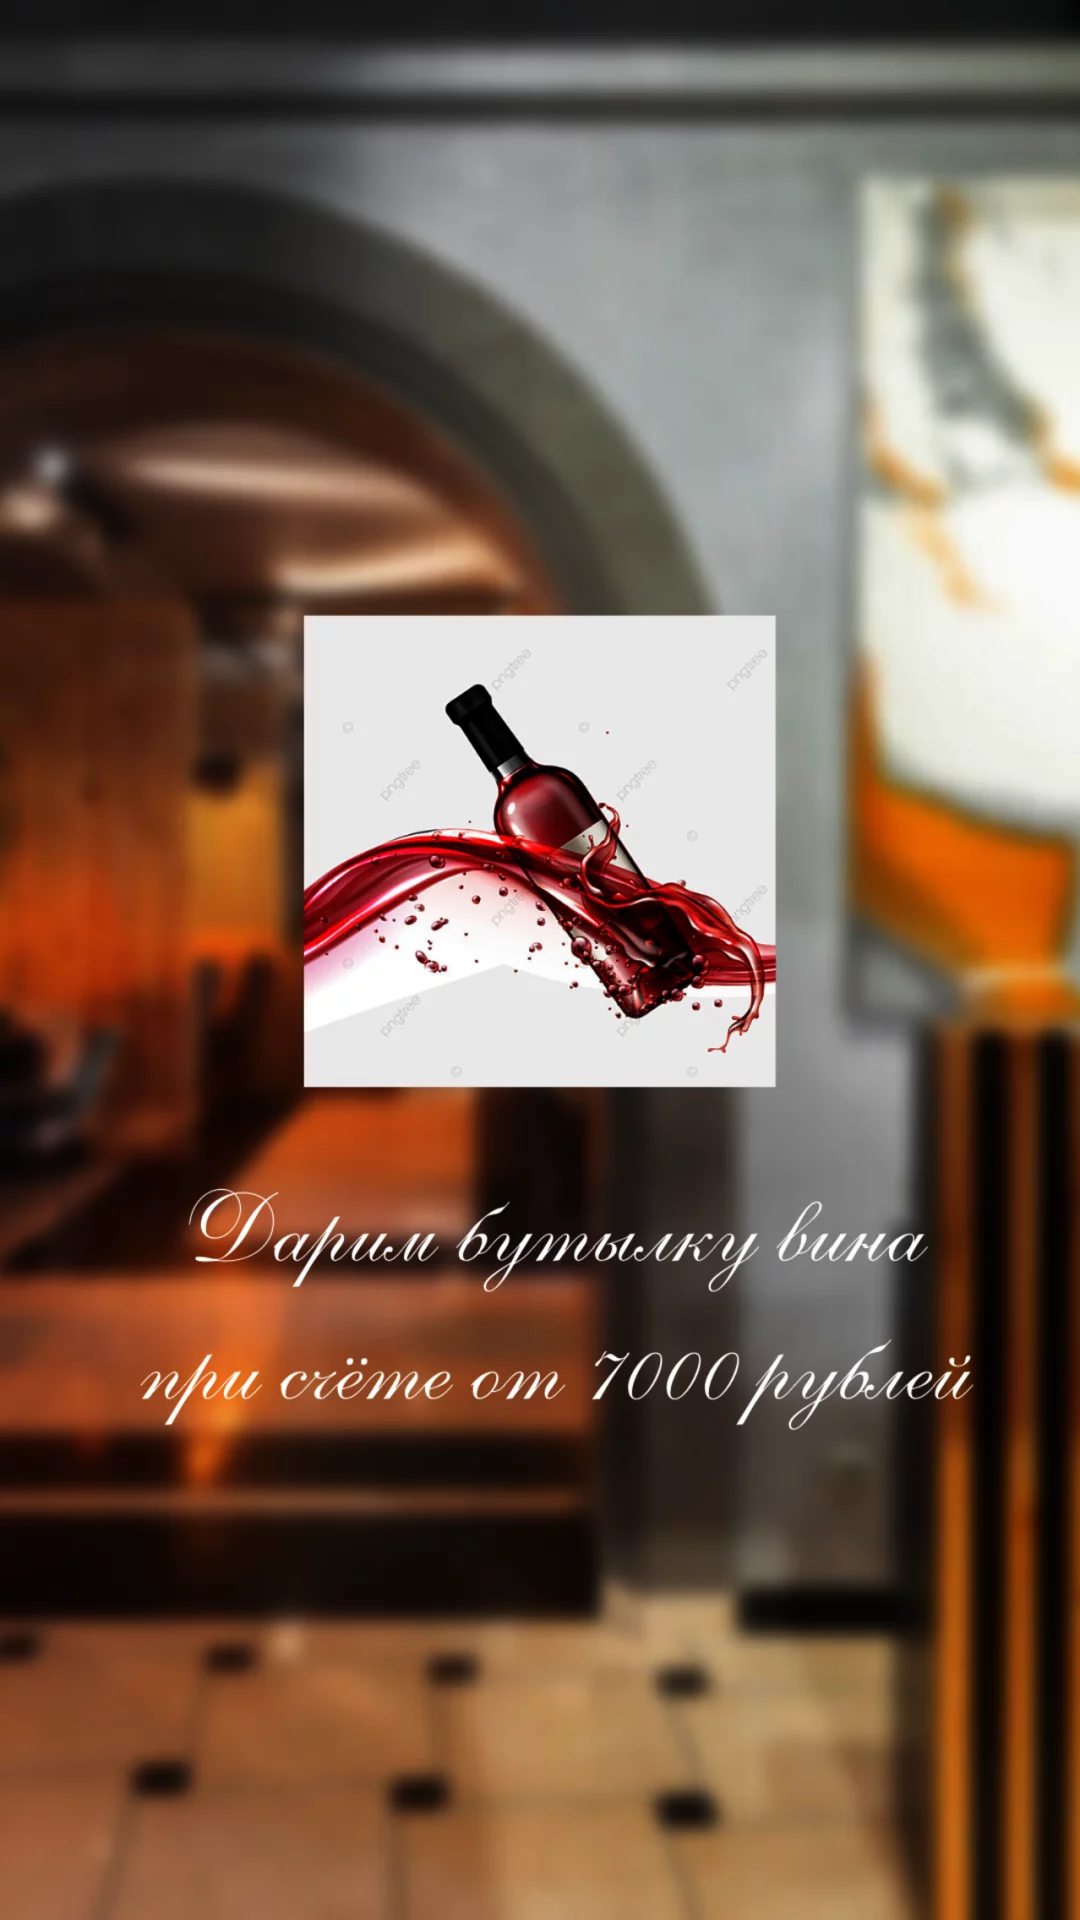 Дарим бутылку вина при счёте от 7000 рублей